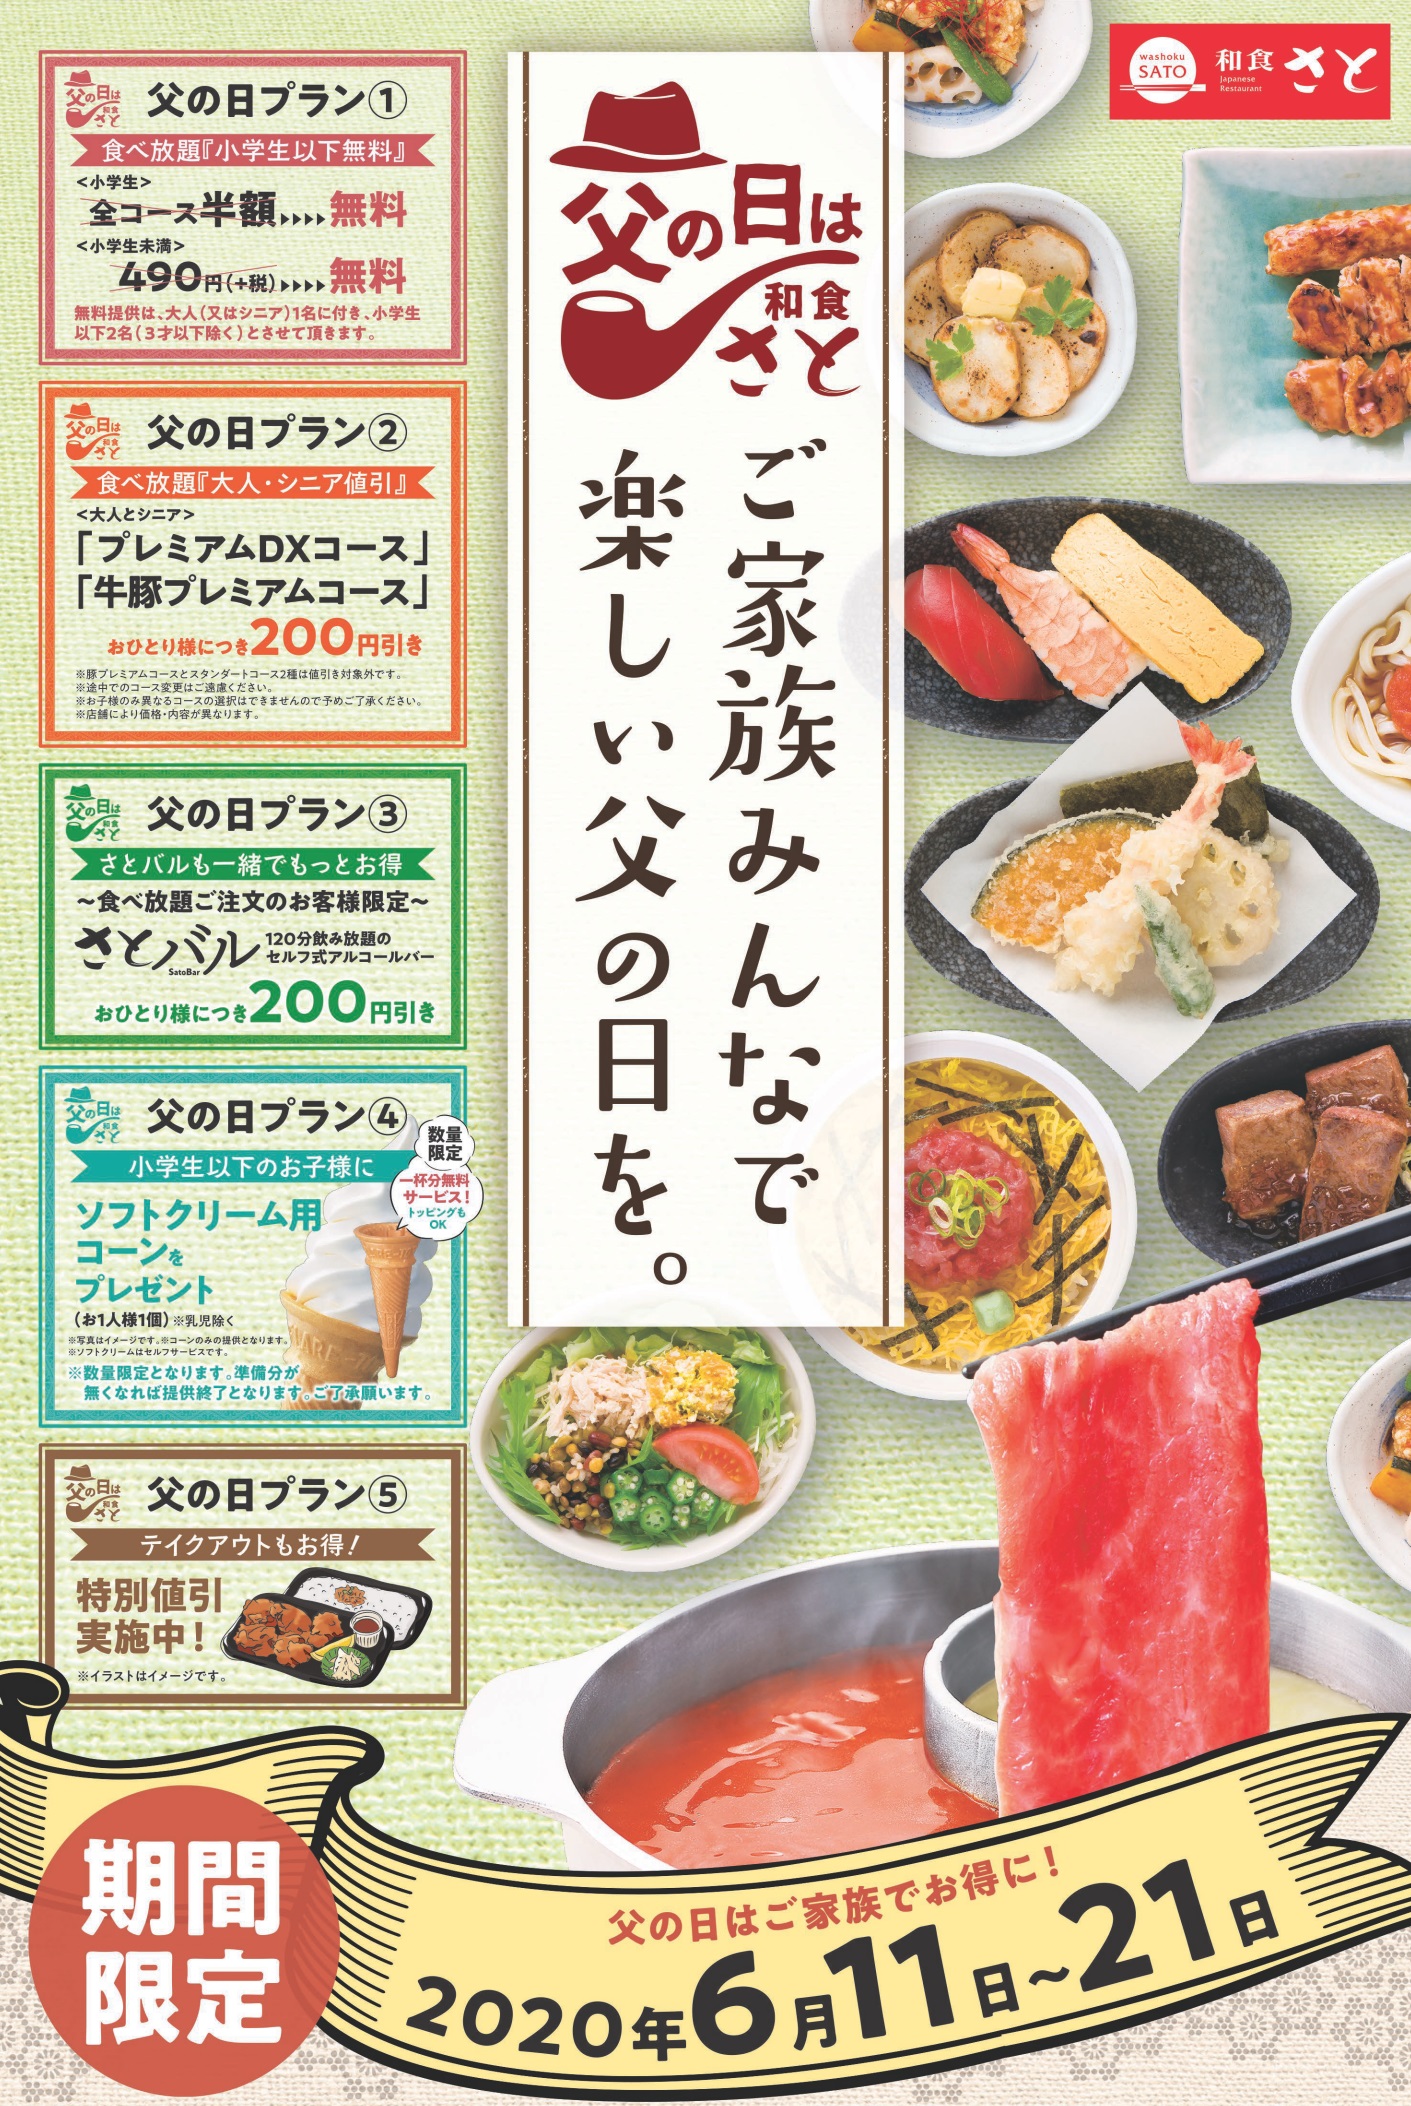 和食さと 子どもは無料 父の日特別キャンペーン サトフードサービス株式会社のプレスリリース